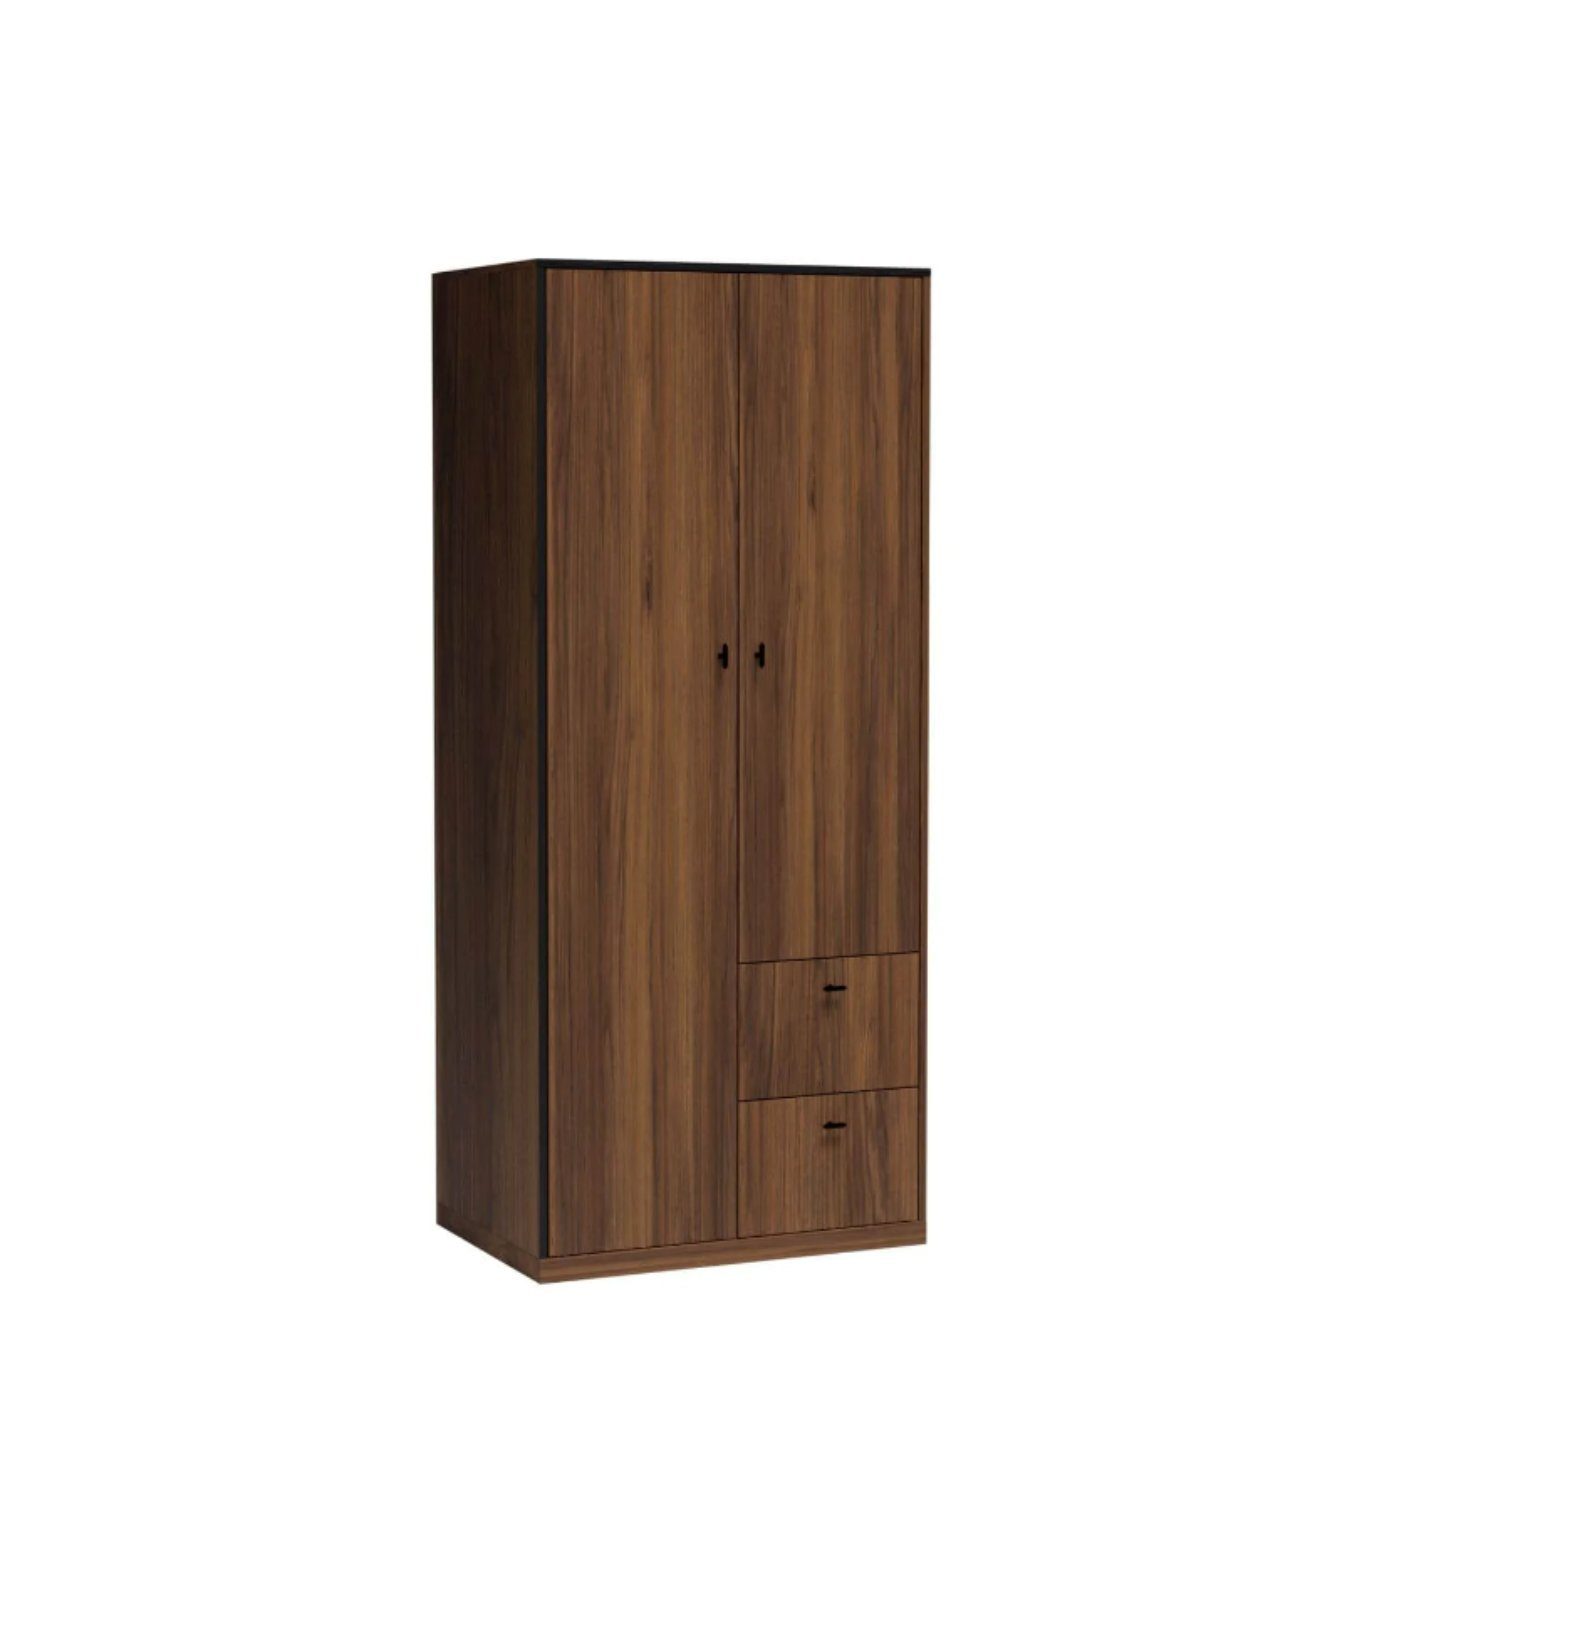 Furnix Kleiderschrank SENEZA S-1 mit zwei Türen & 2 Schubladen Warmia Nussbaum